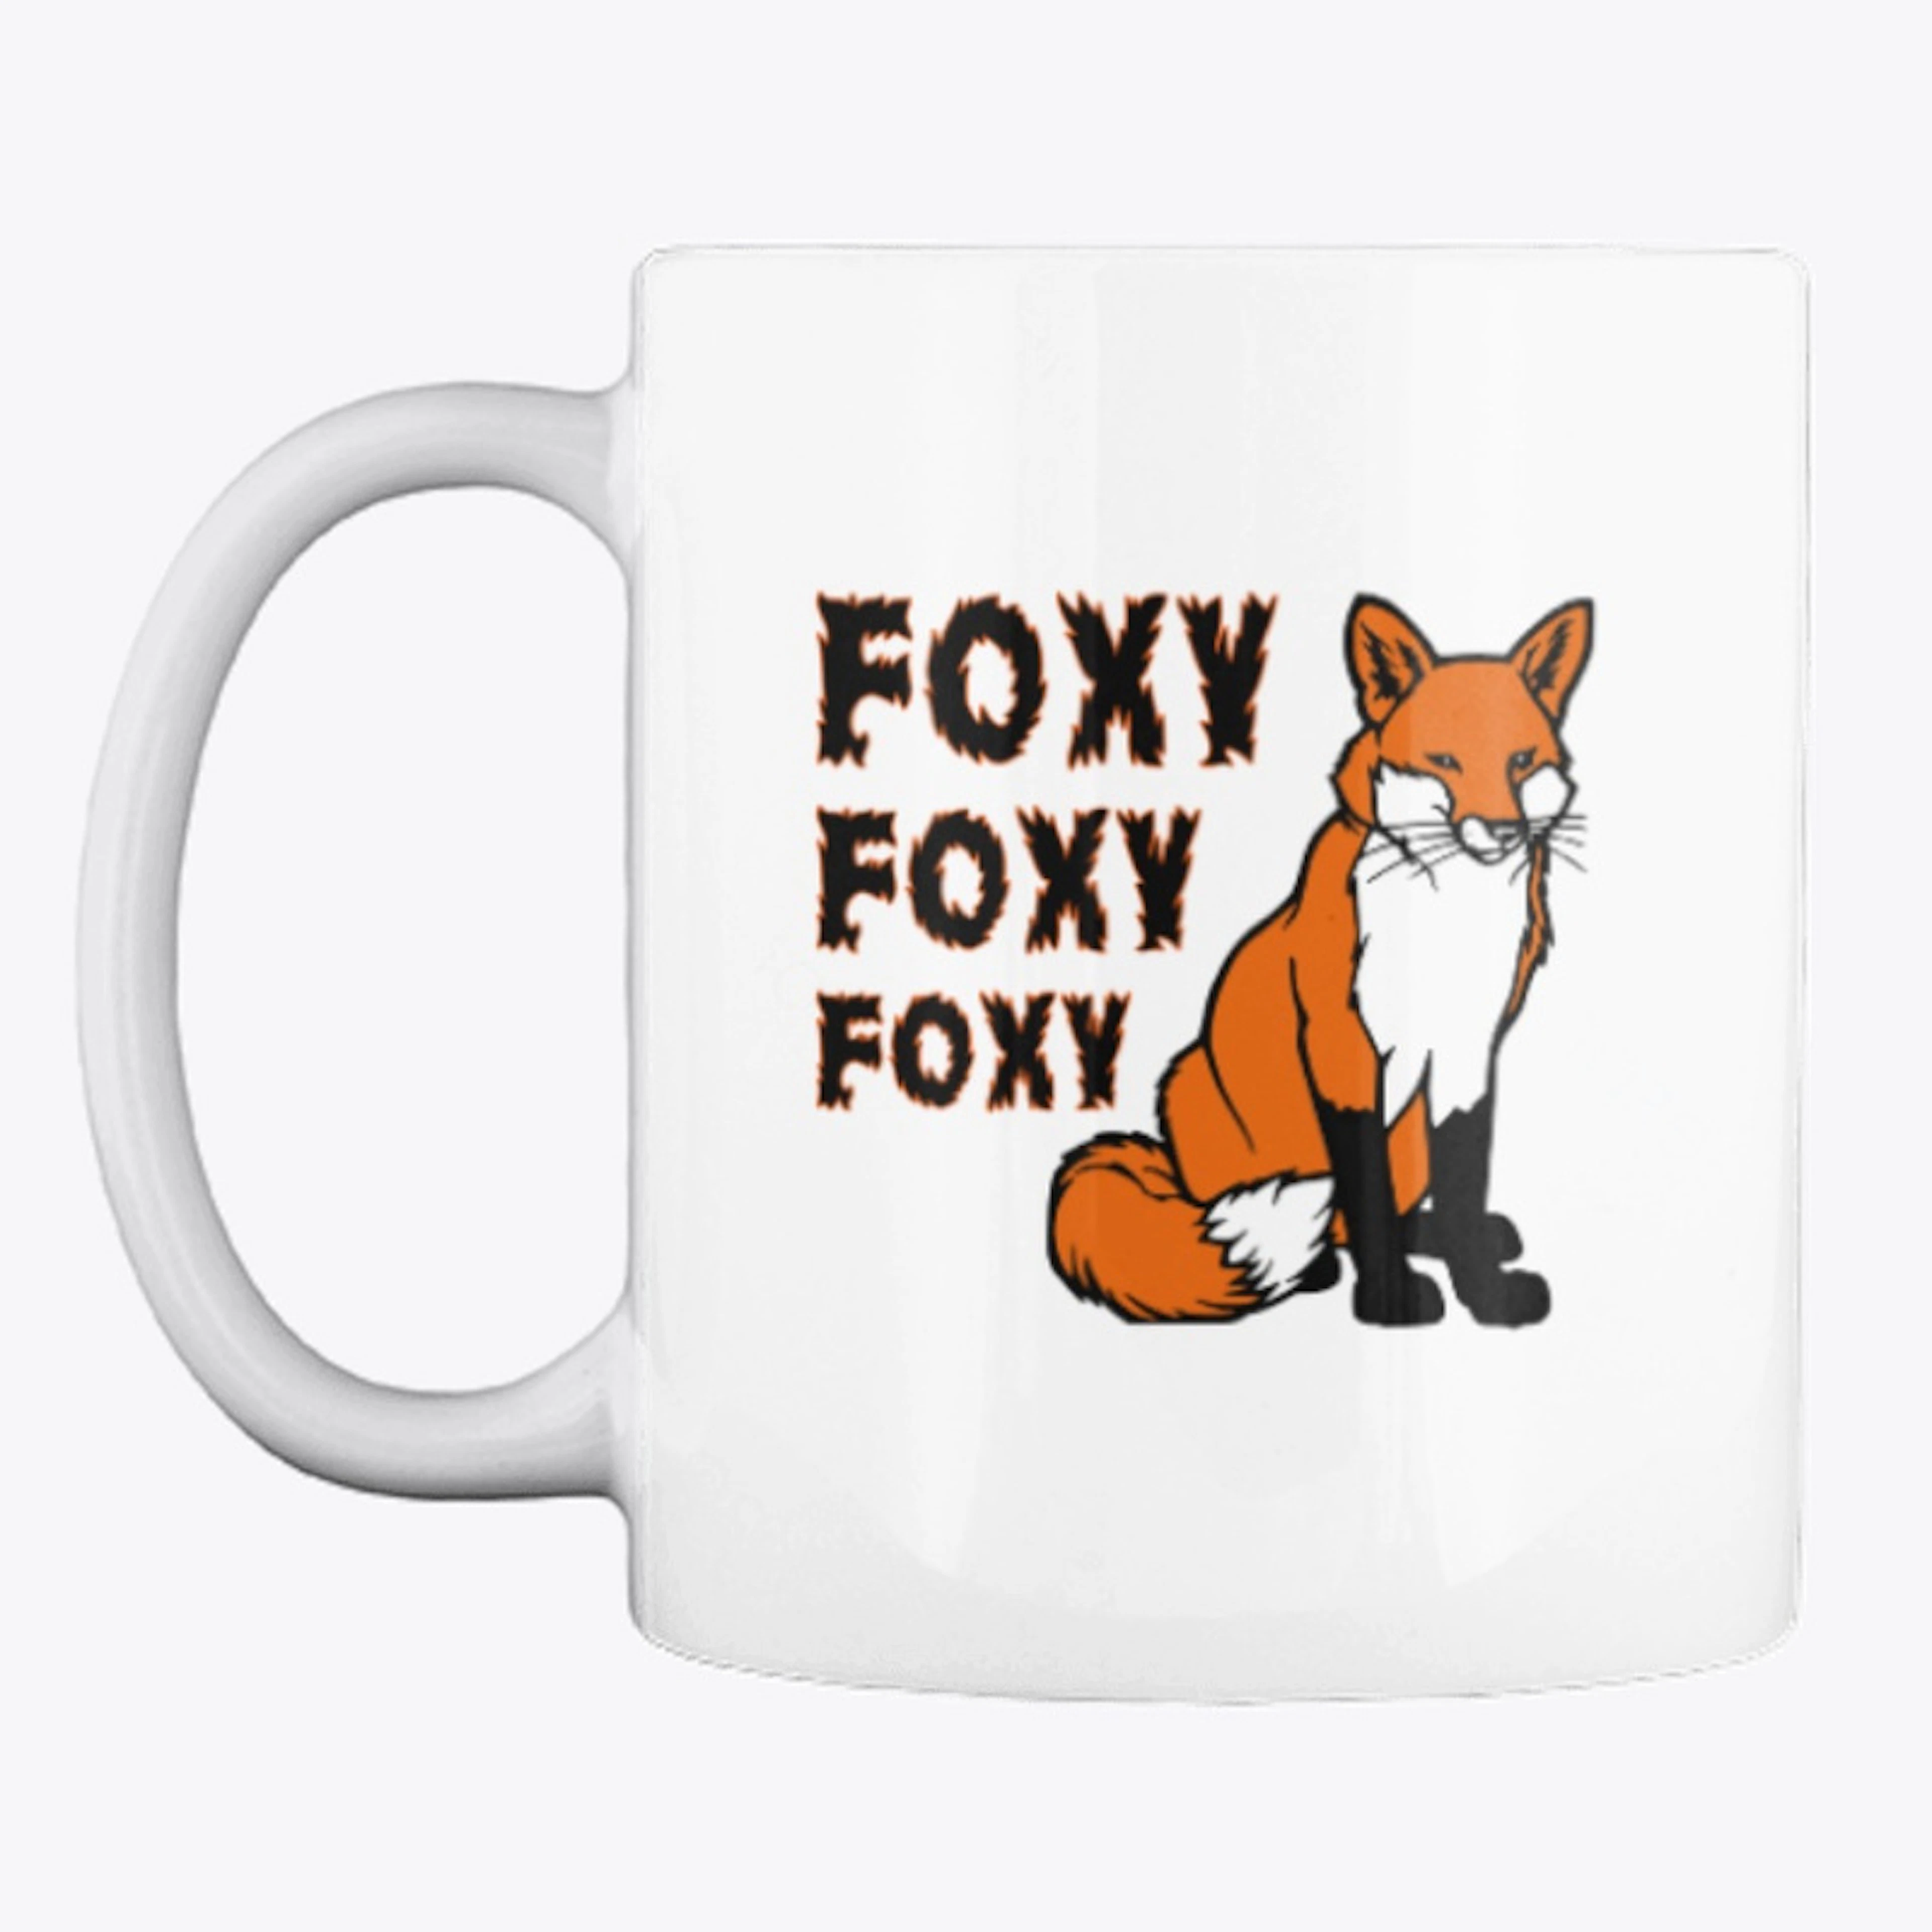 Foxy Foxy Foxy